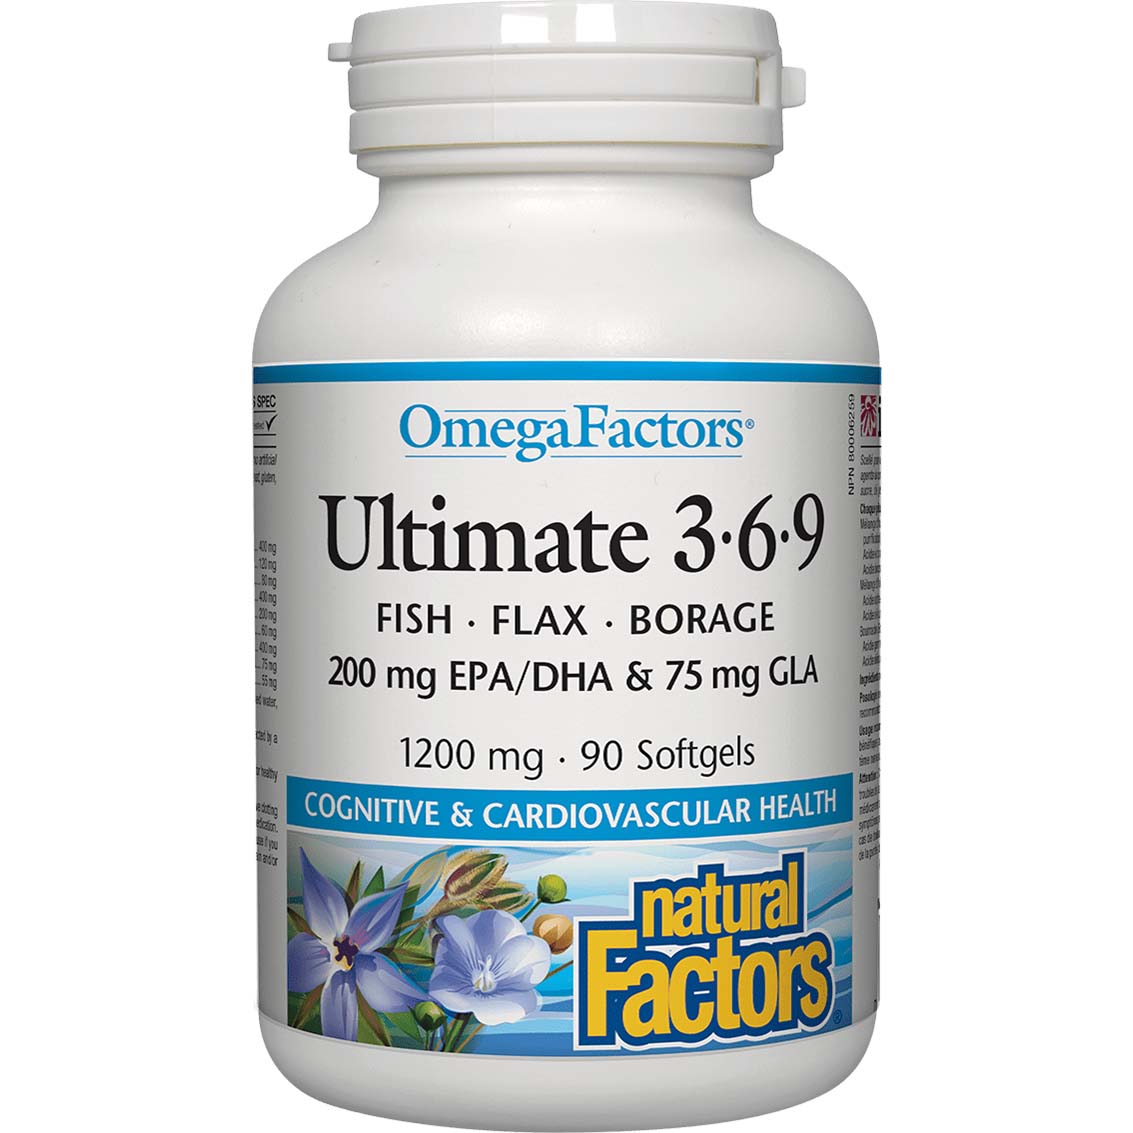 Natural Factors Ultimate Omega Factors 3.6.9, 1200 mg, 90 Softgels